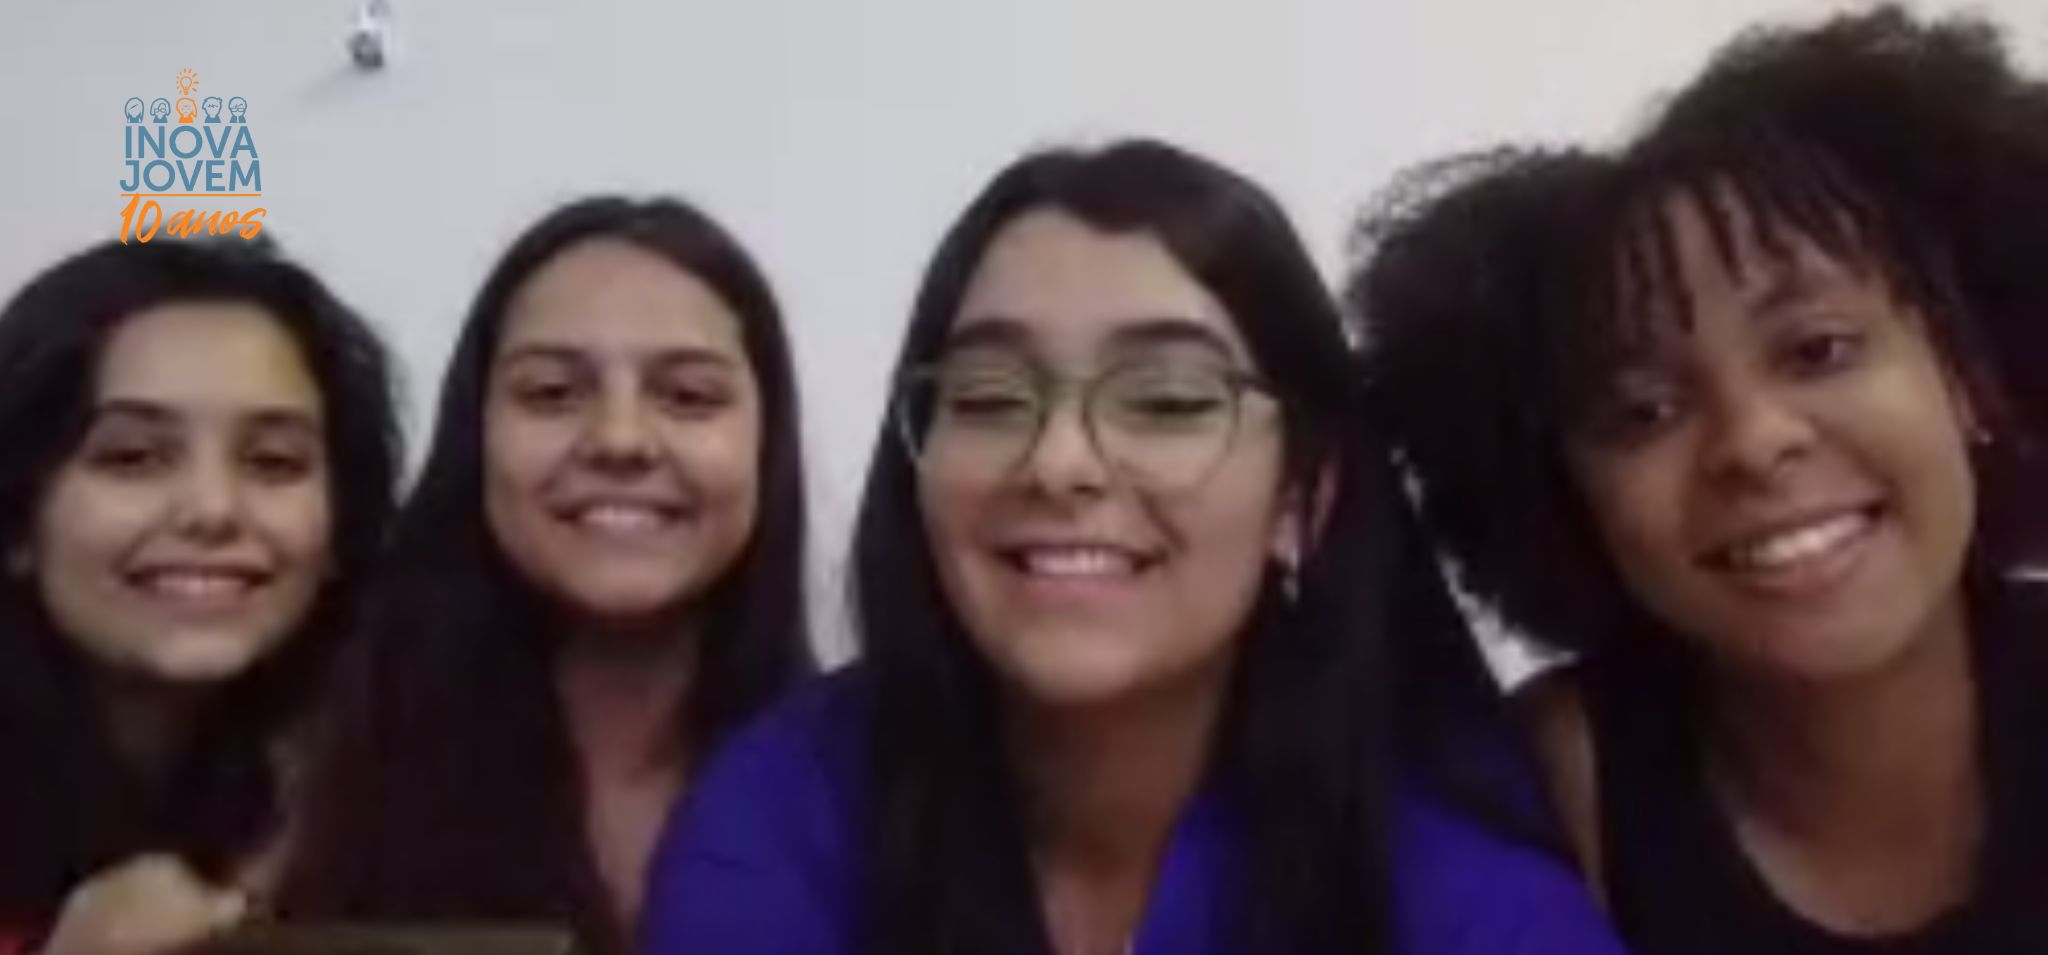 Captura de tela. Quatro meninas, três brancas e uma negra sorriem para a câmera.